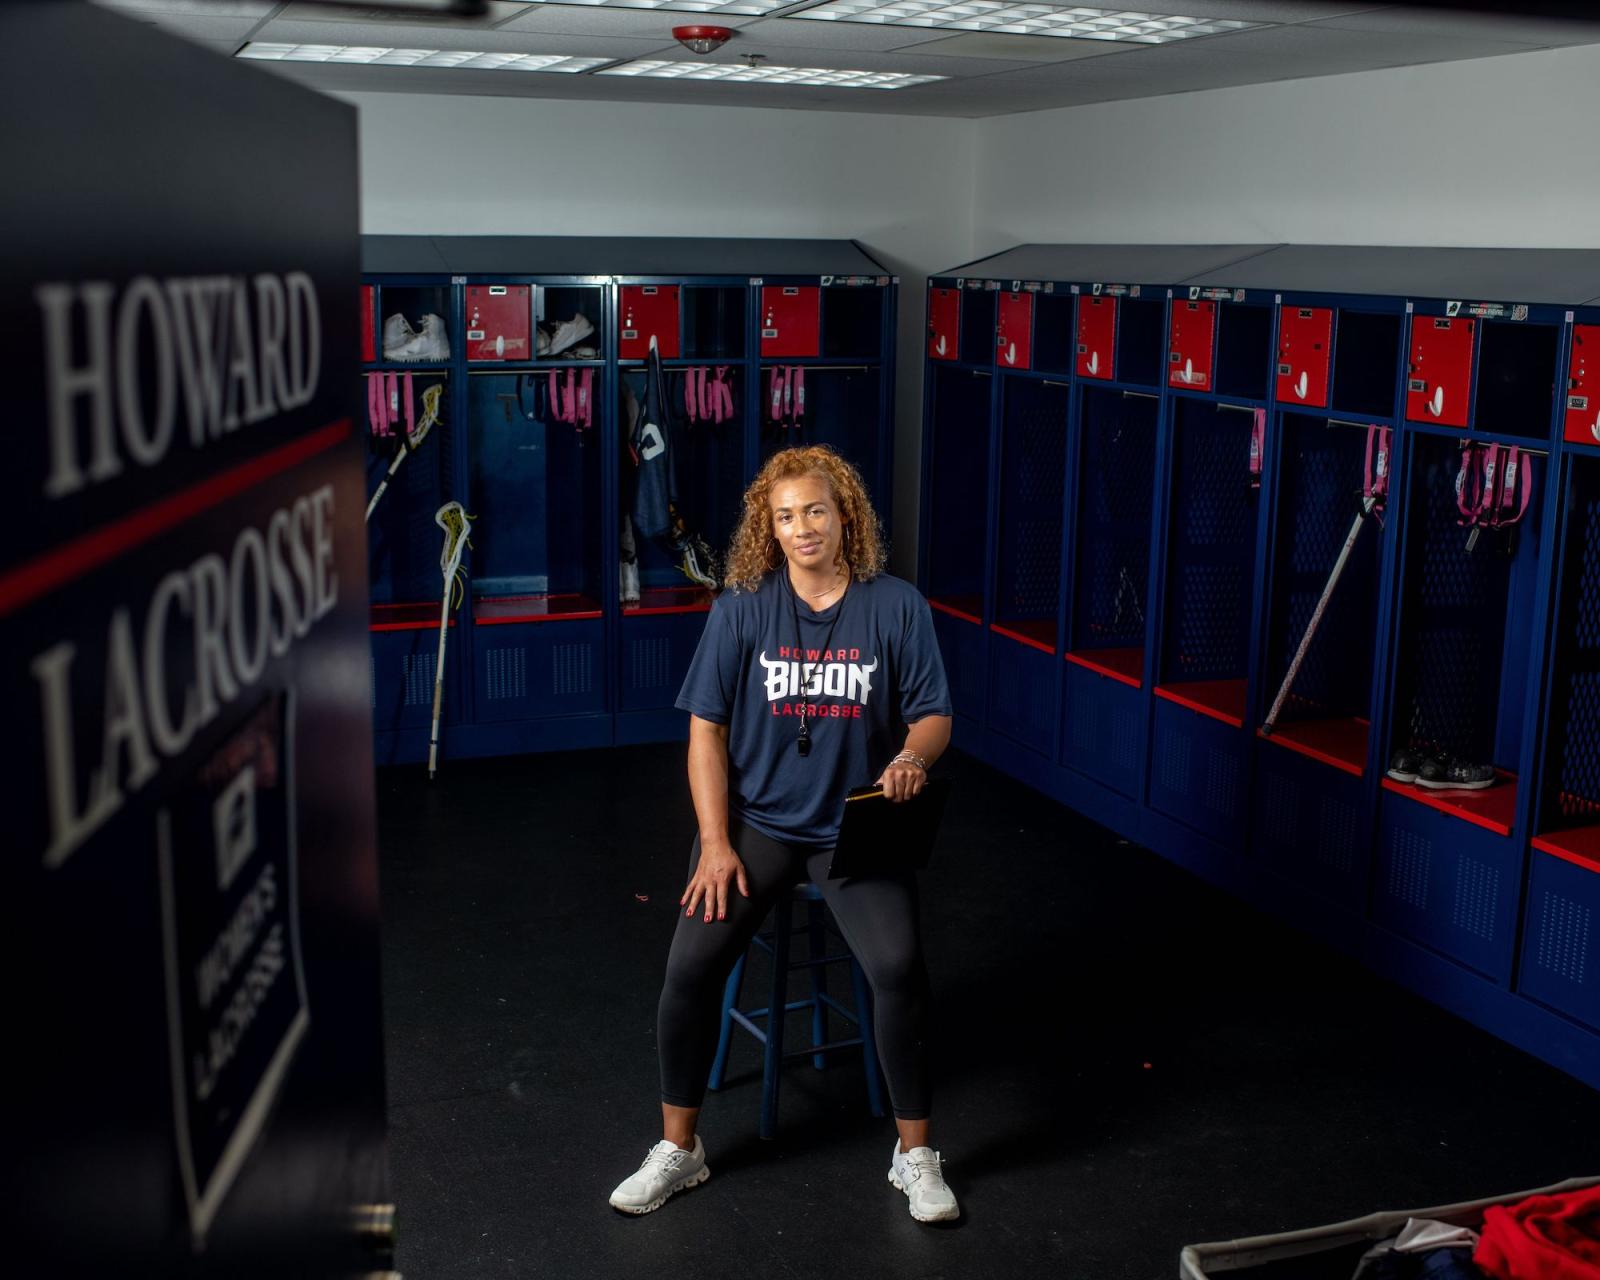 Karen Healy-Silcott in women's locker room for lacrosse